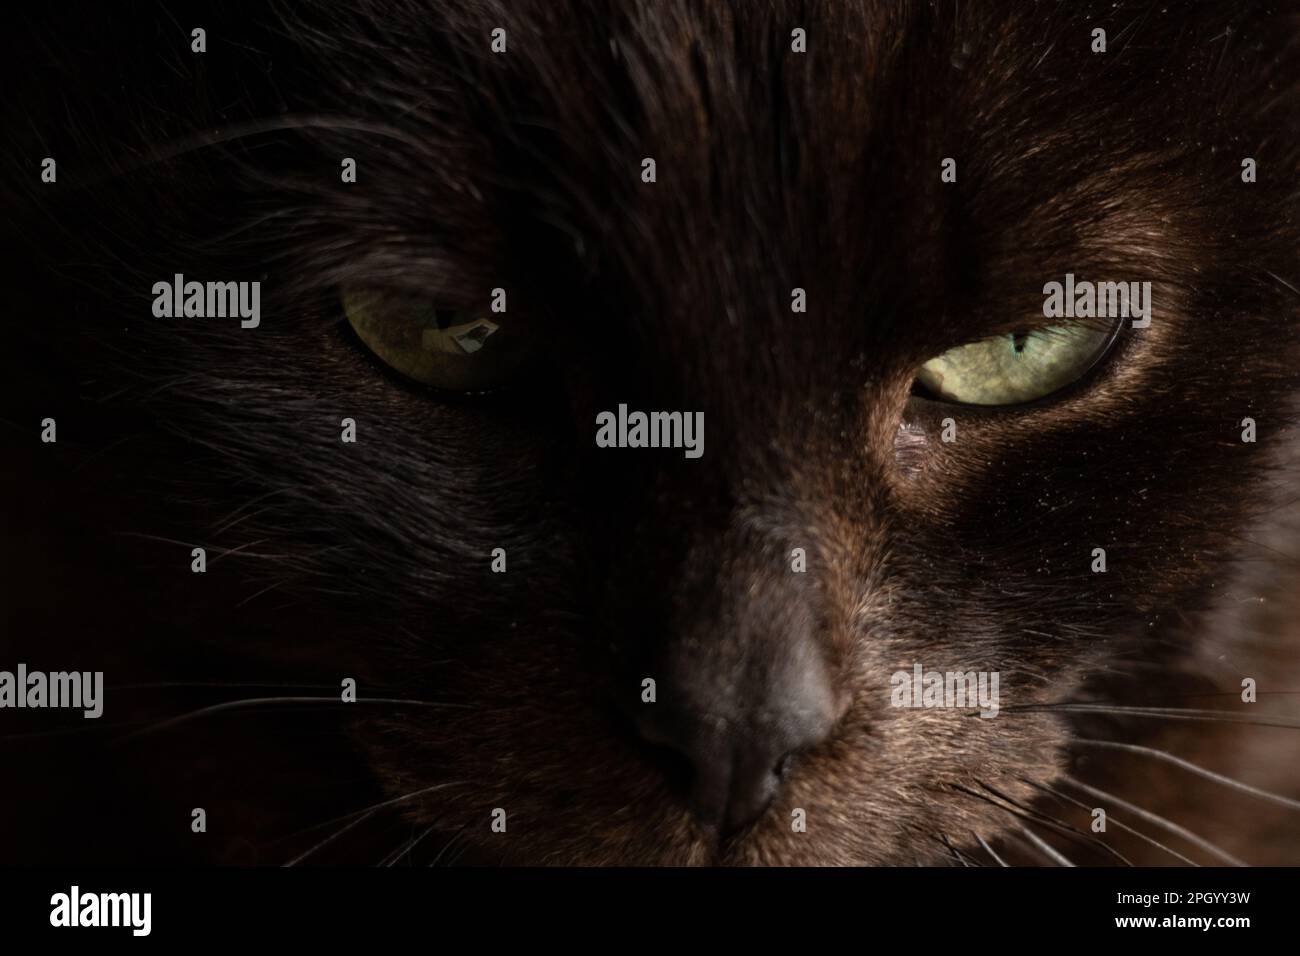 ritratto di un gatto nero su sfondo scuro primo piano, gli occhi di un gatto nero Foto Stock